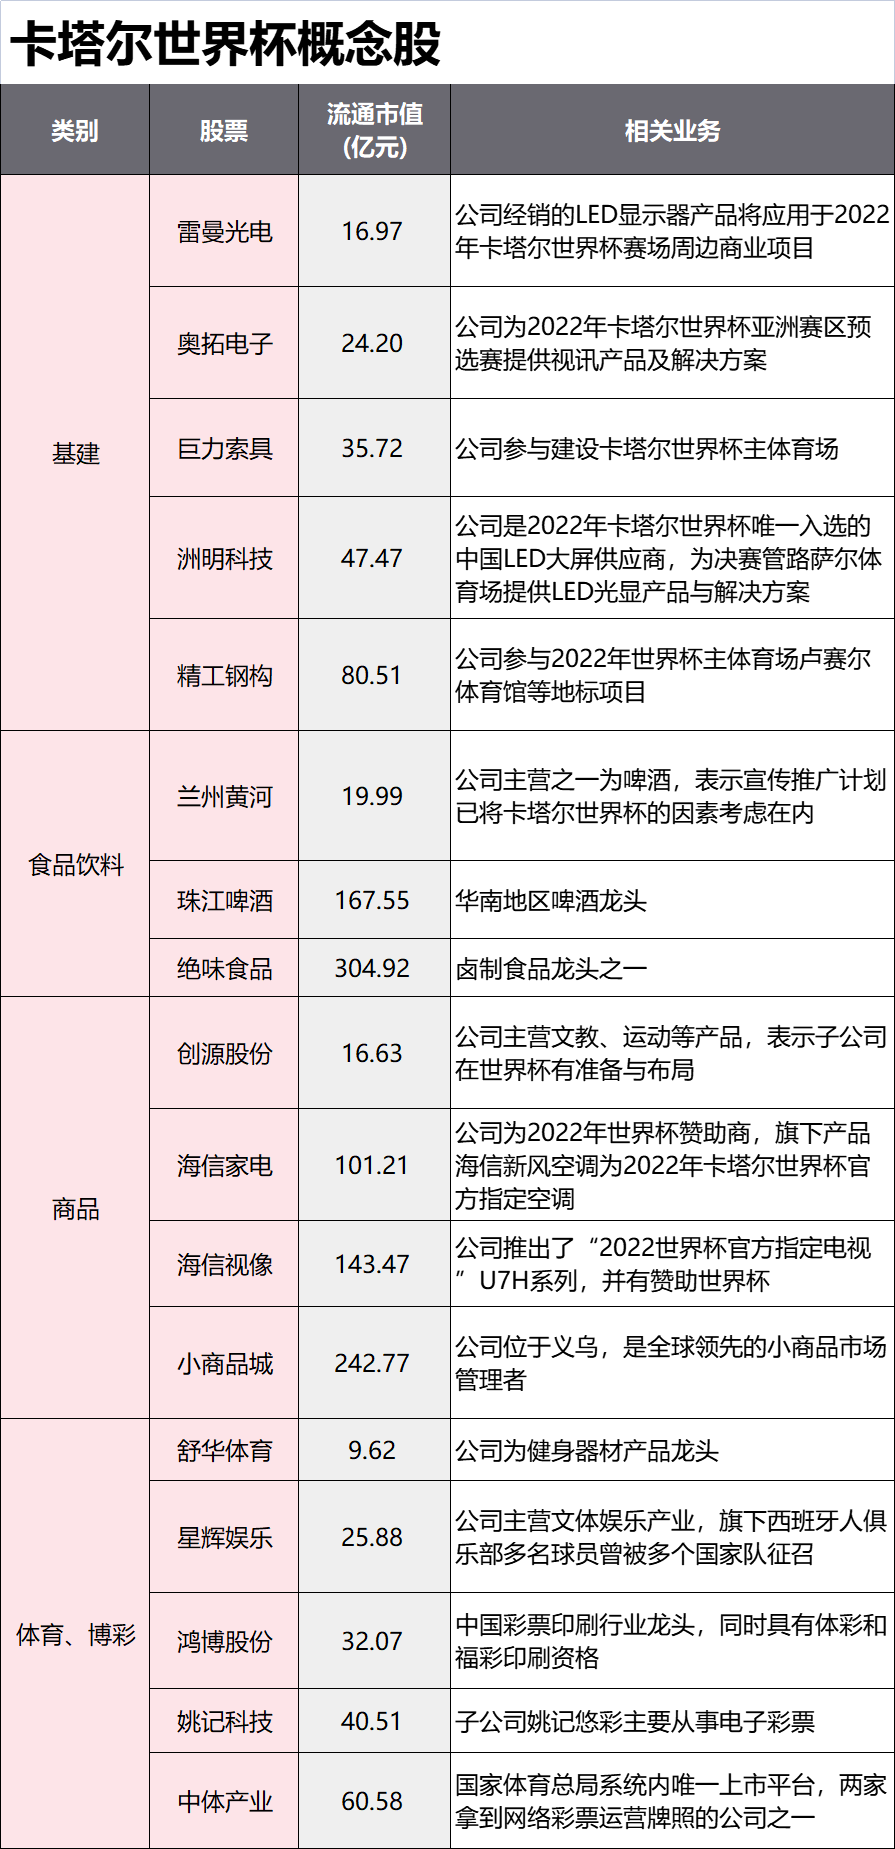 台湾宜兰县海域发生4.5级地震，震源深度51千米英语零基础儿童适合外教吗